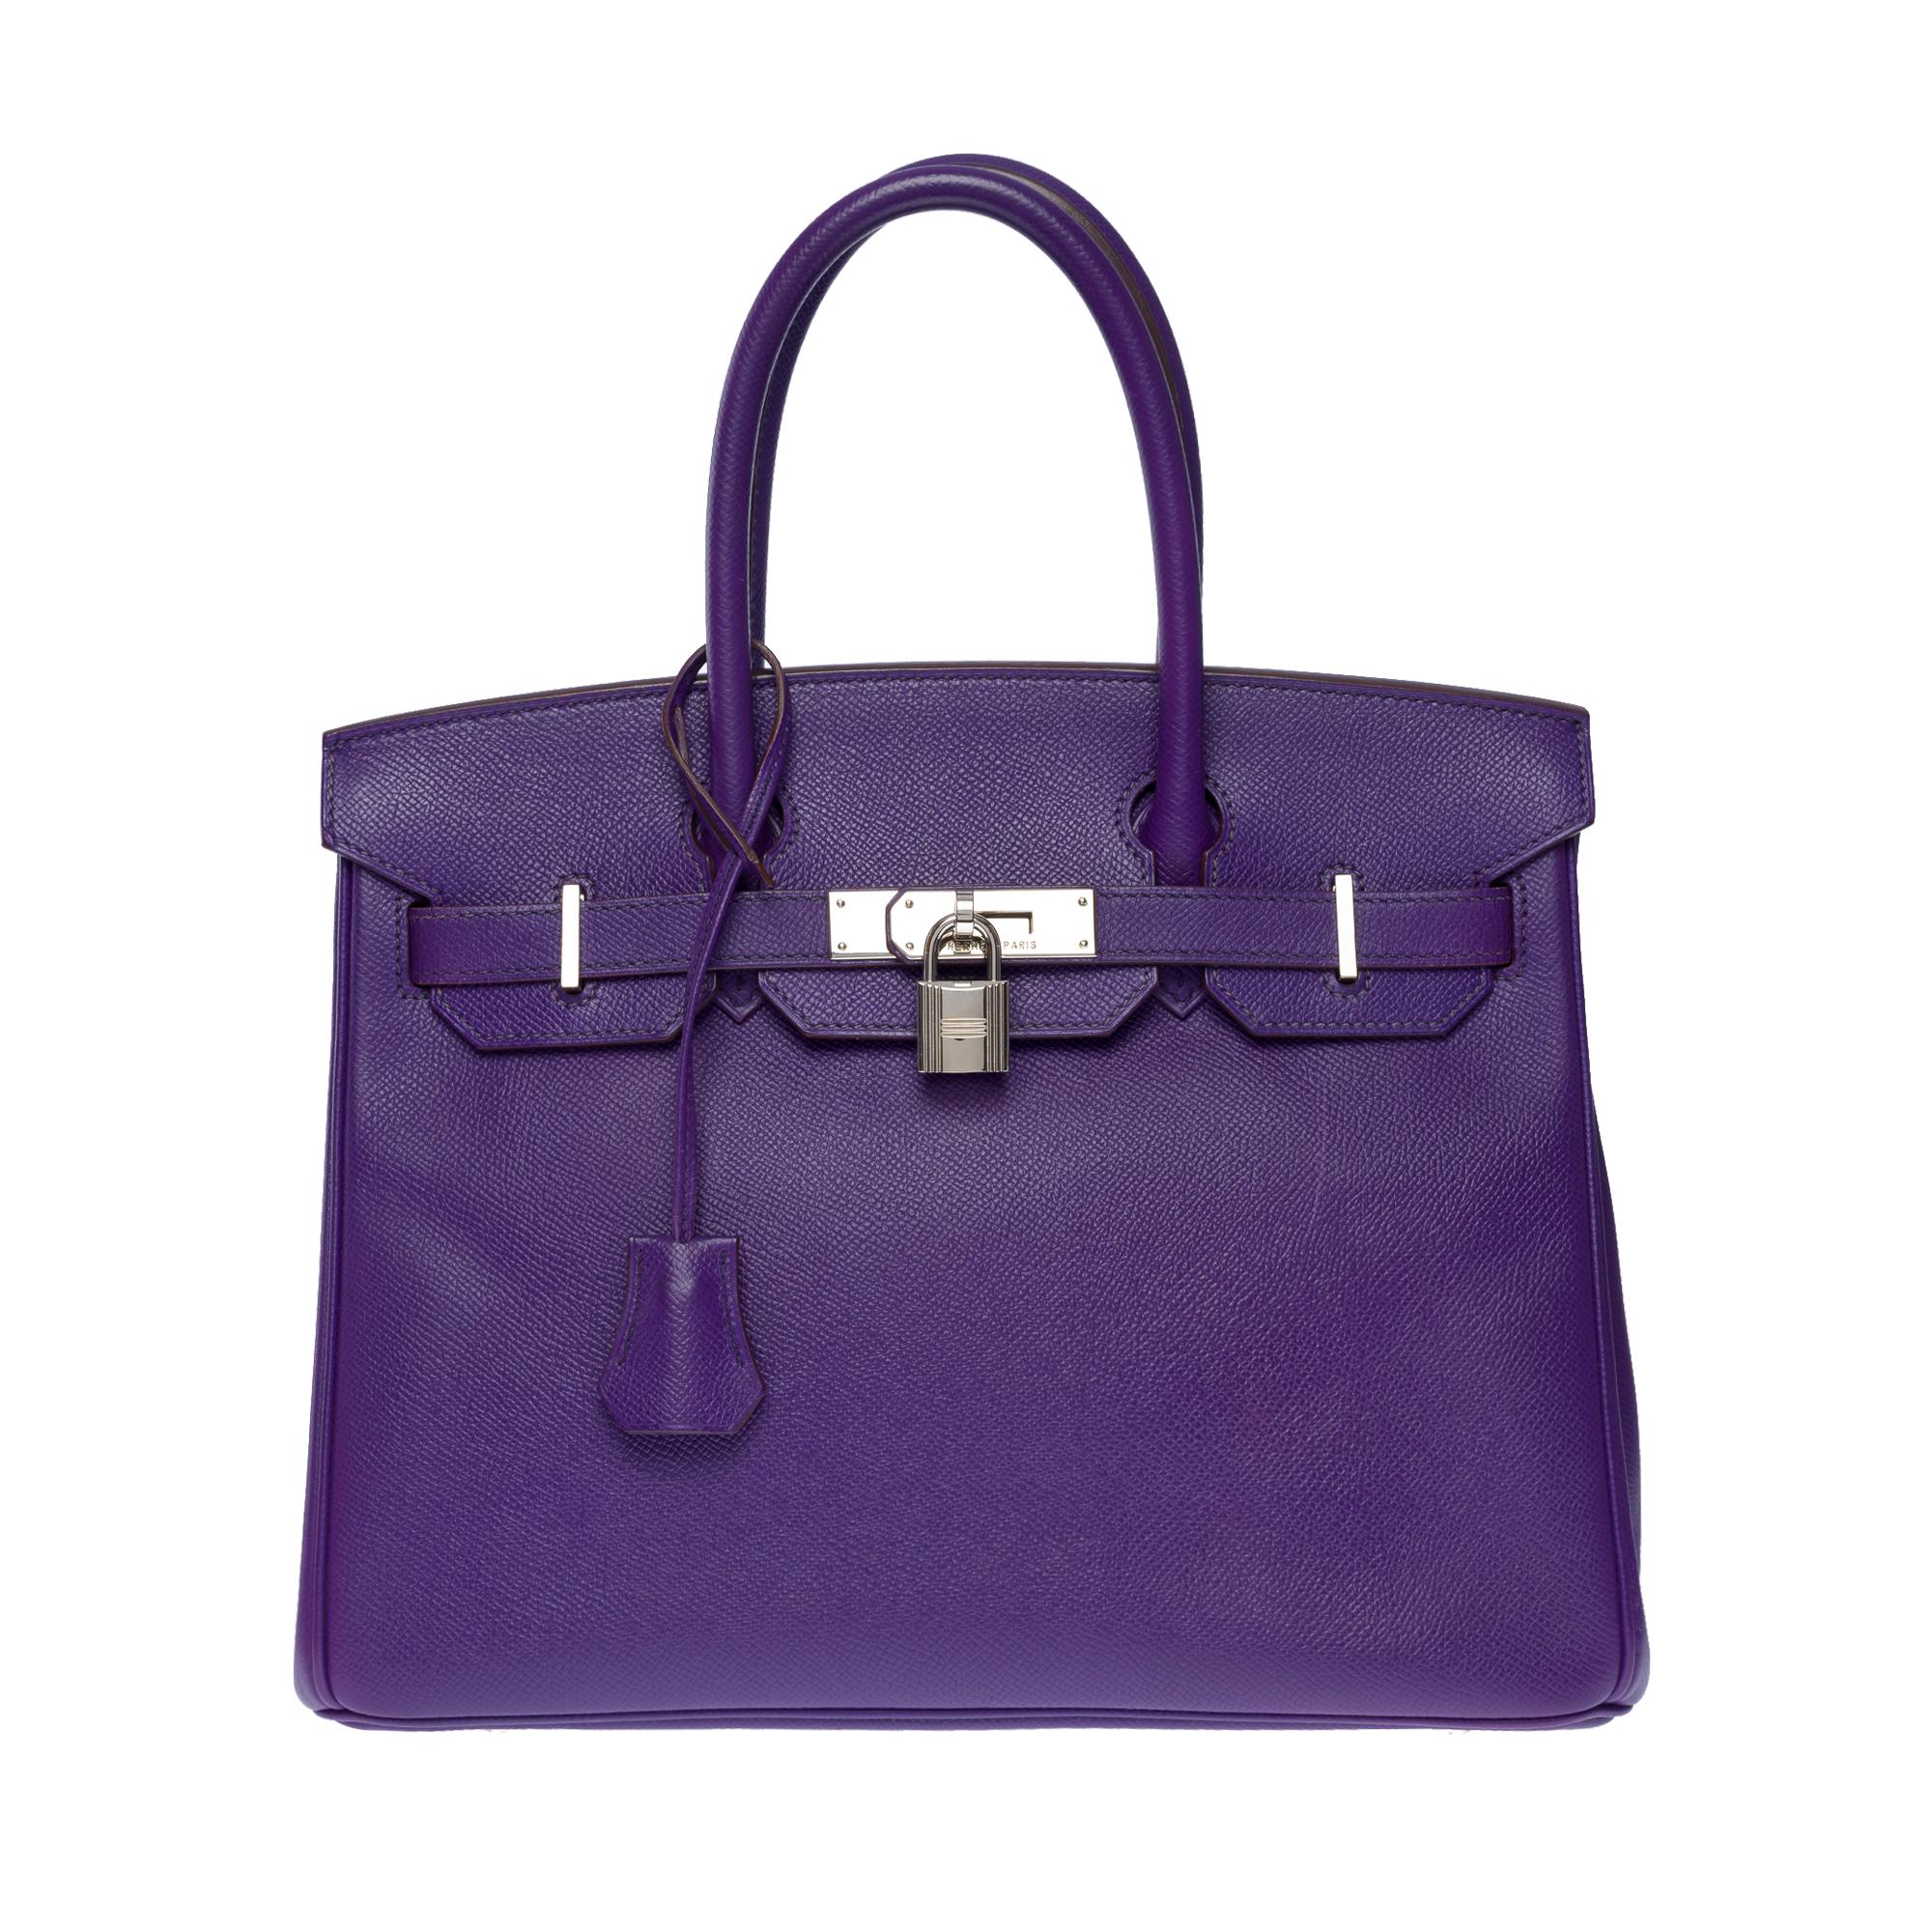 Exquisite Hermes Birkin 30 Handtasche in Iris Epsom Iris , Palladium Silber Metallbeschläge, Doppelgriff in lila Leder für eine handgefertigte

Klappenverschluss
Innenfutter aus violettem Leder, eine Tasche mit Reißverschluss, eine aufgesetzte